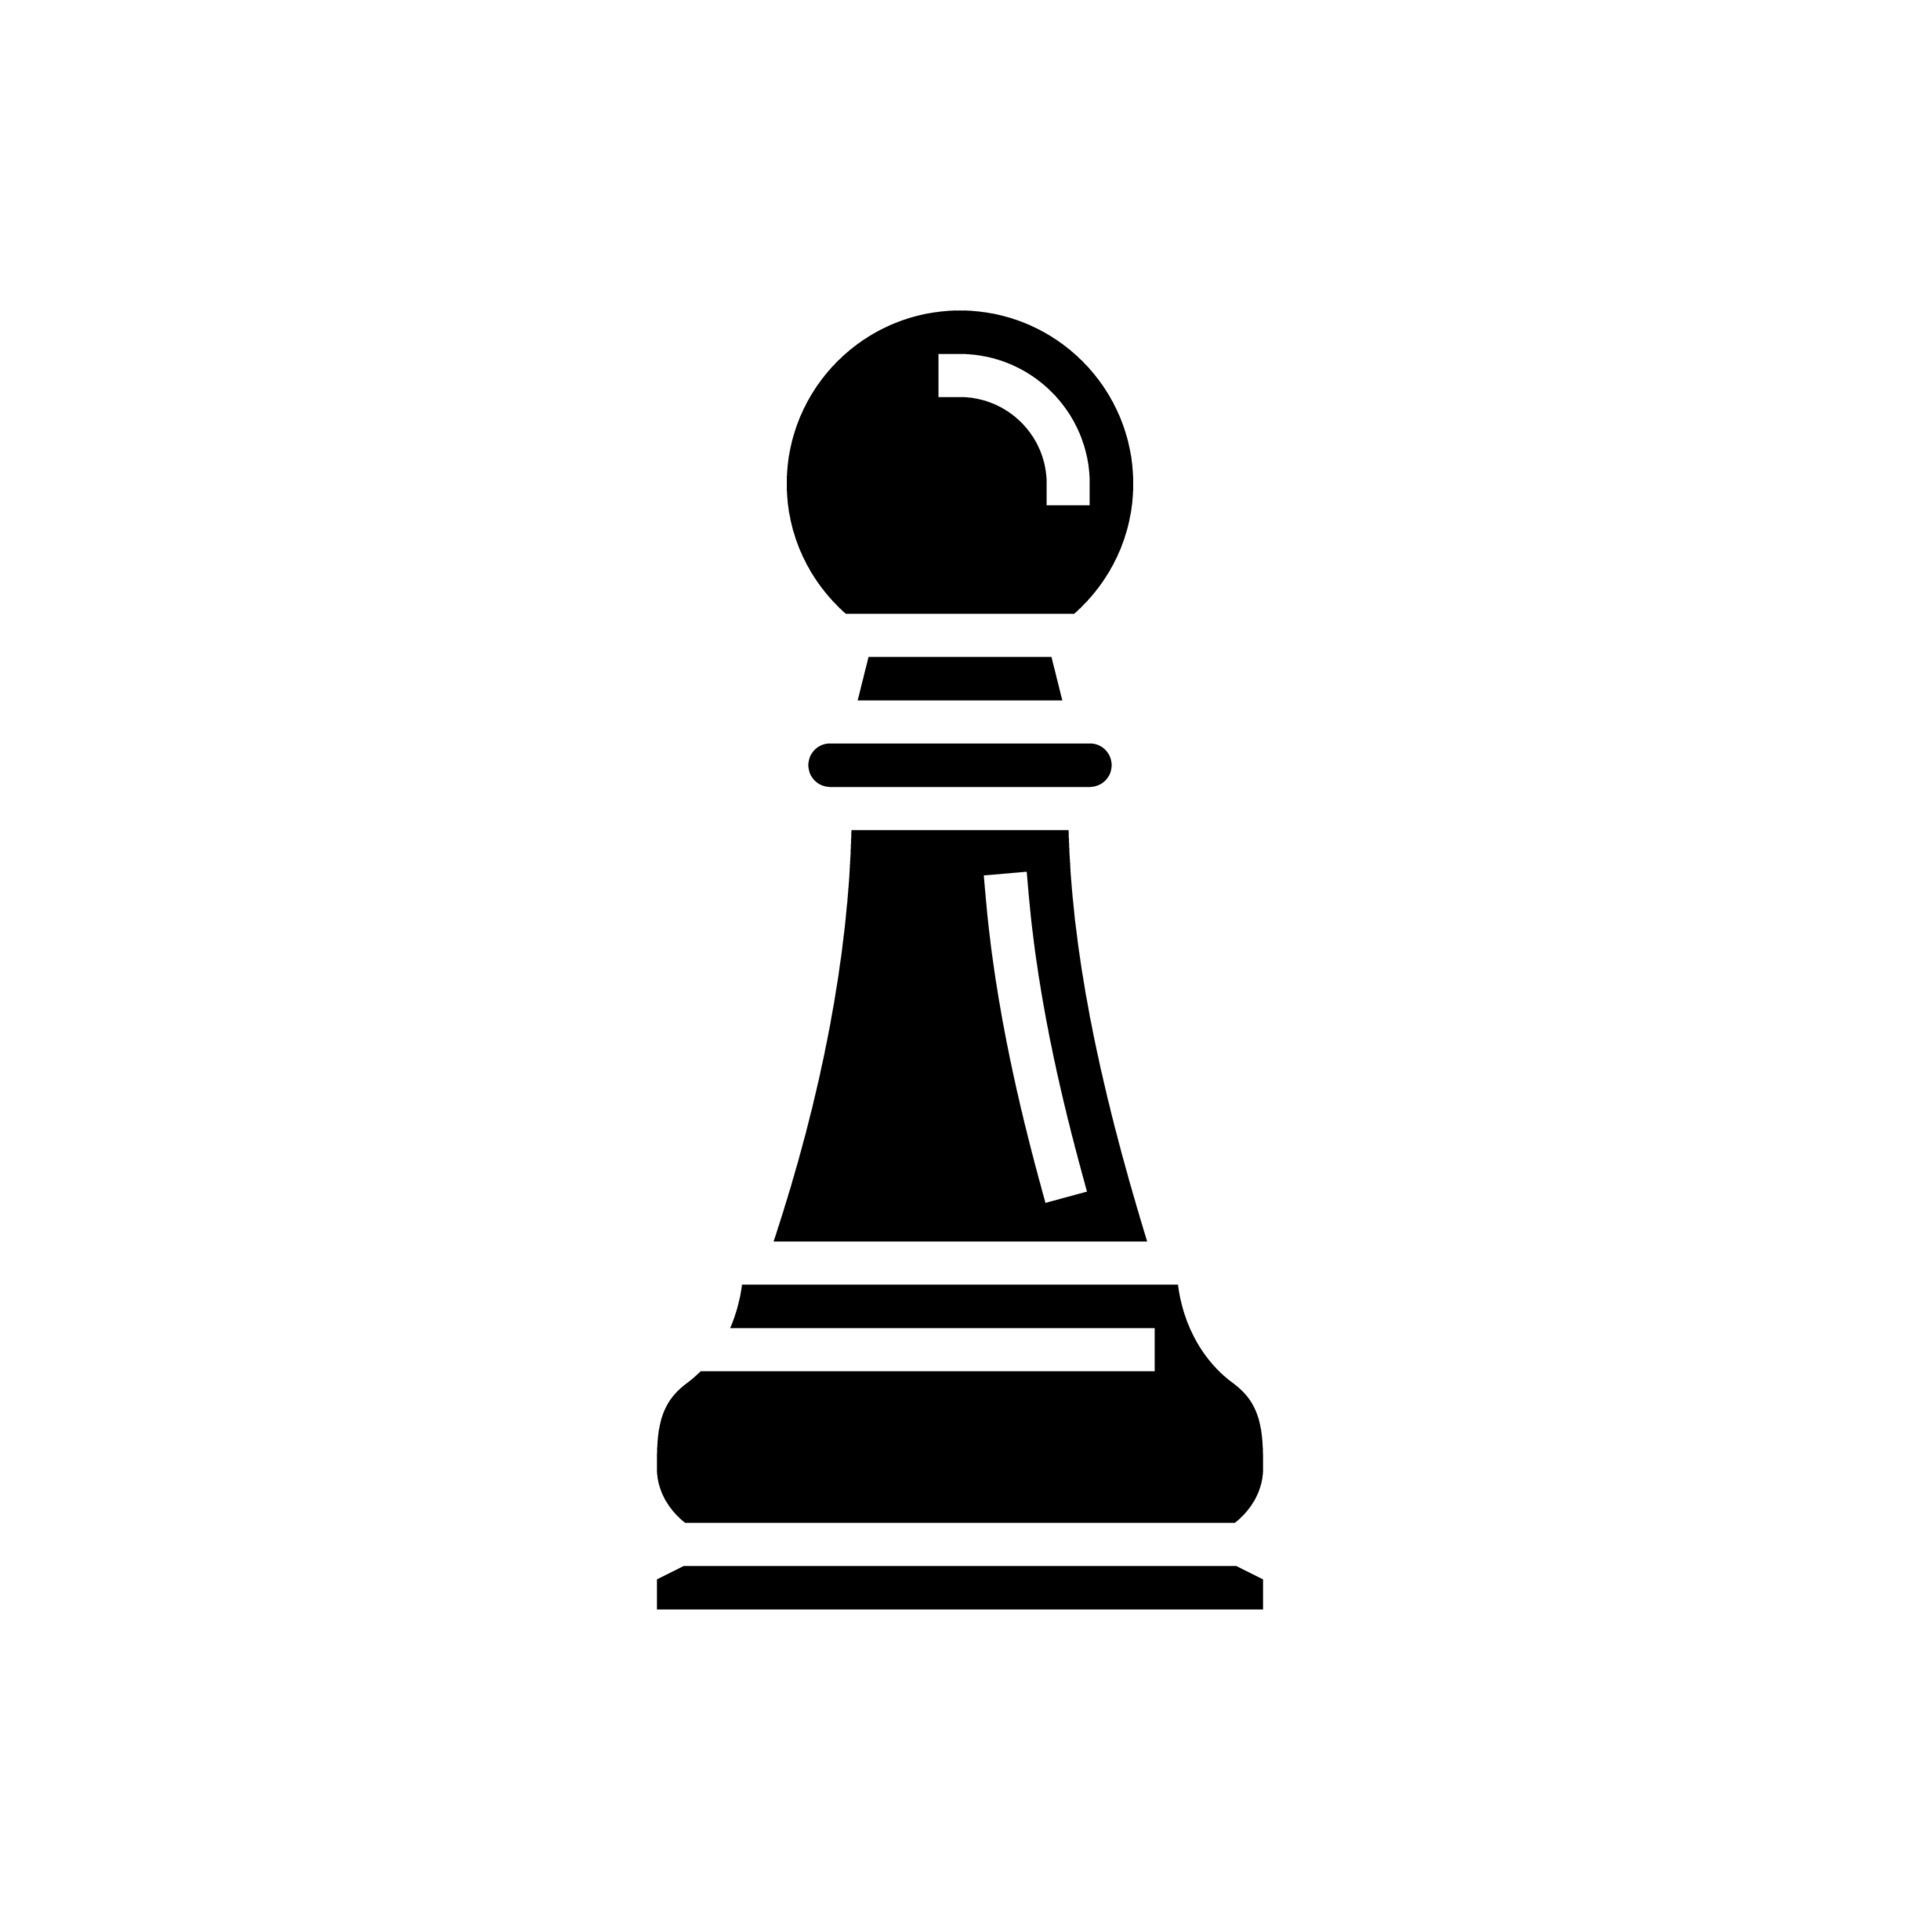 Do xadrez, o peão